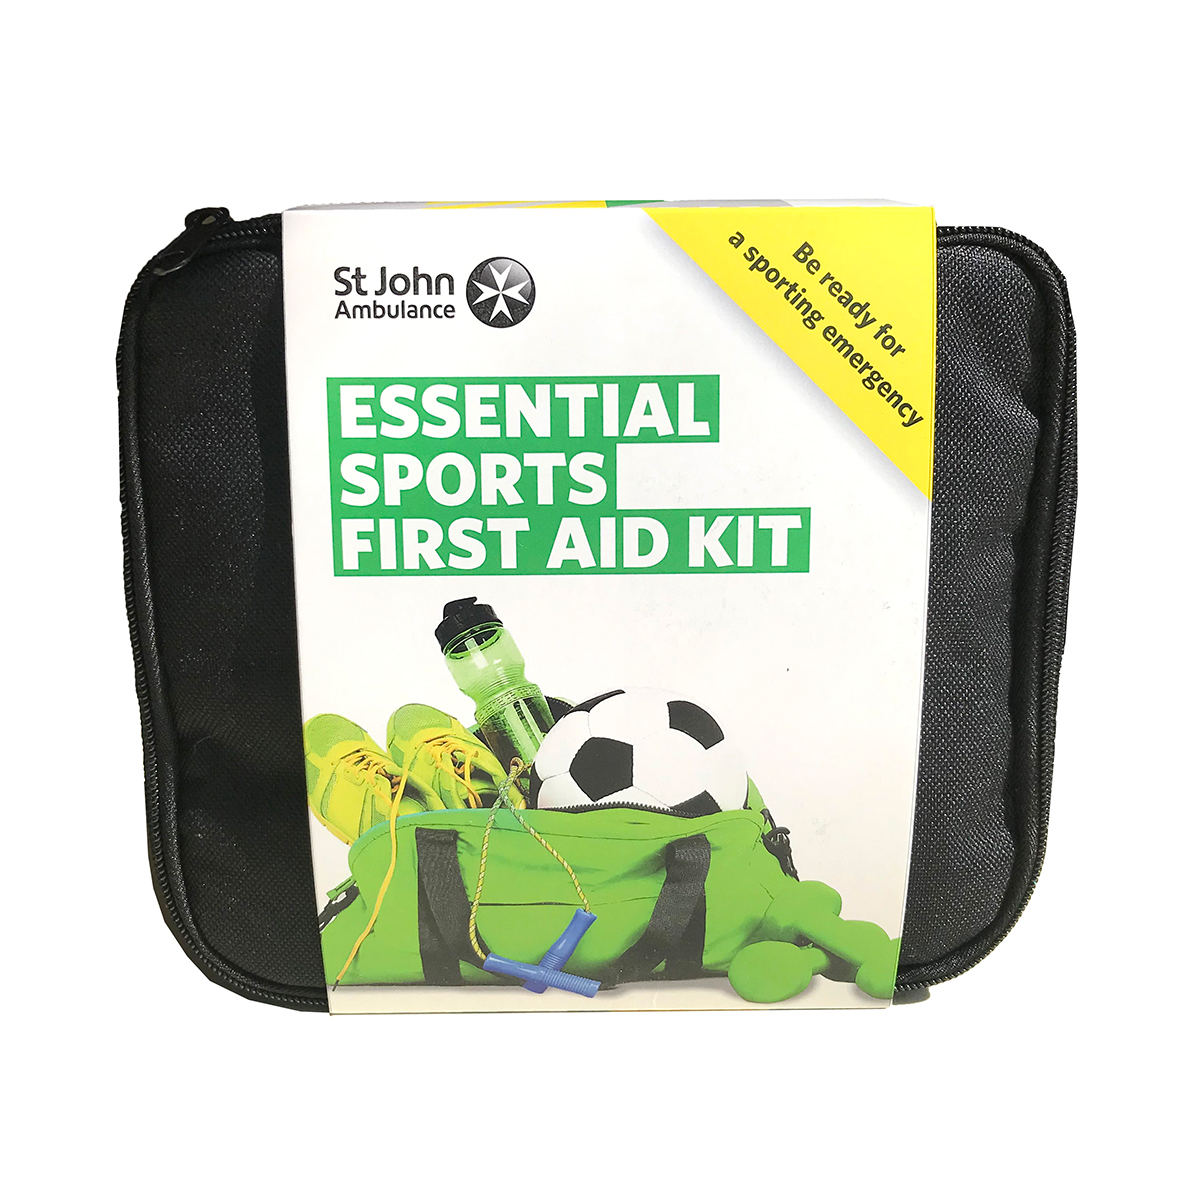 St John Ambulance Essential Sports First Aid Kit